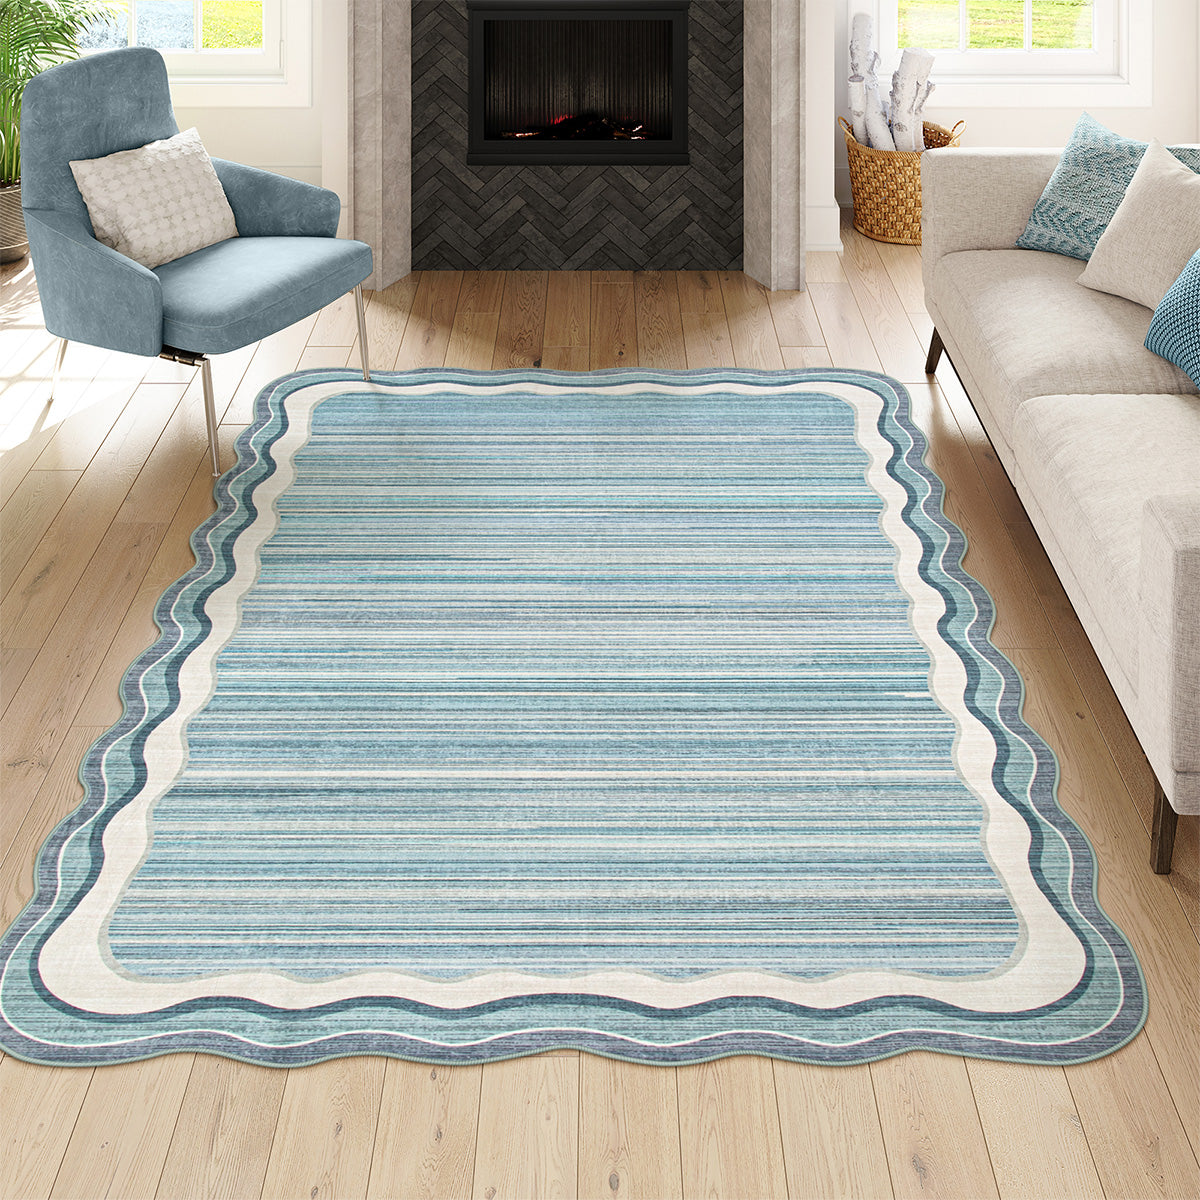 irregular area rugs